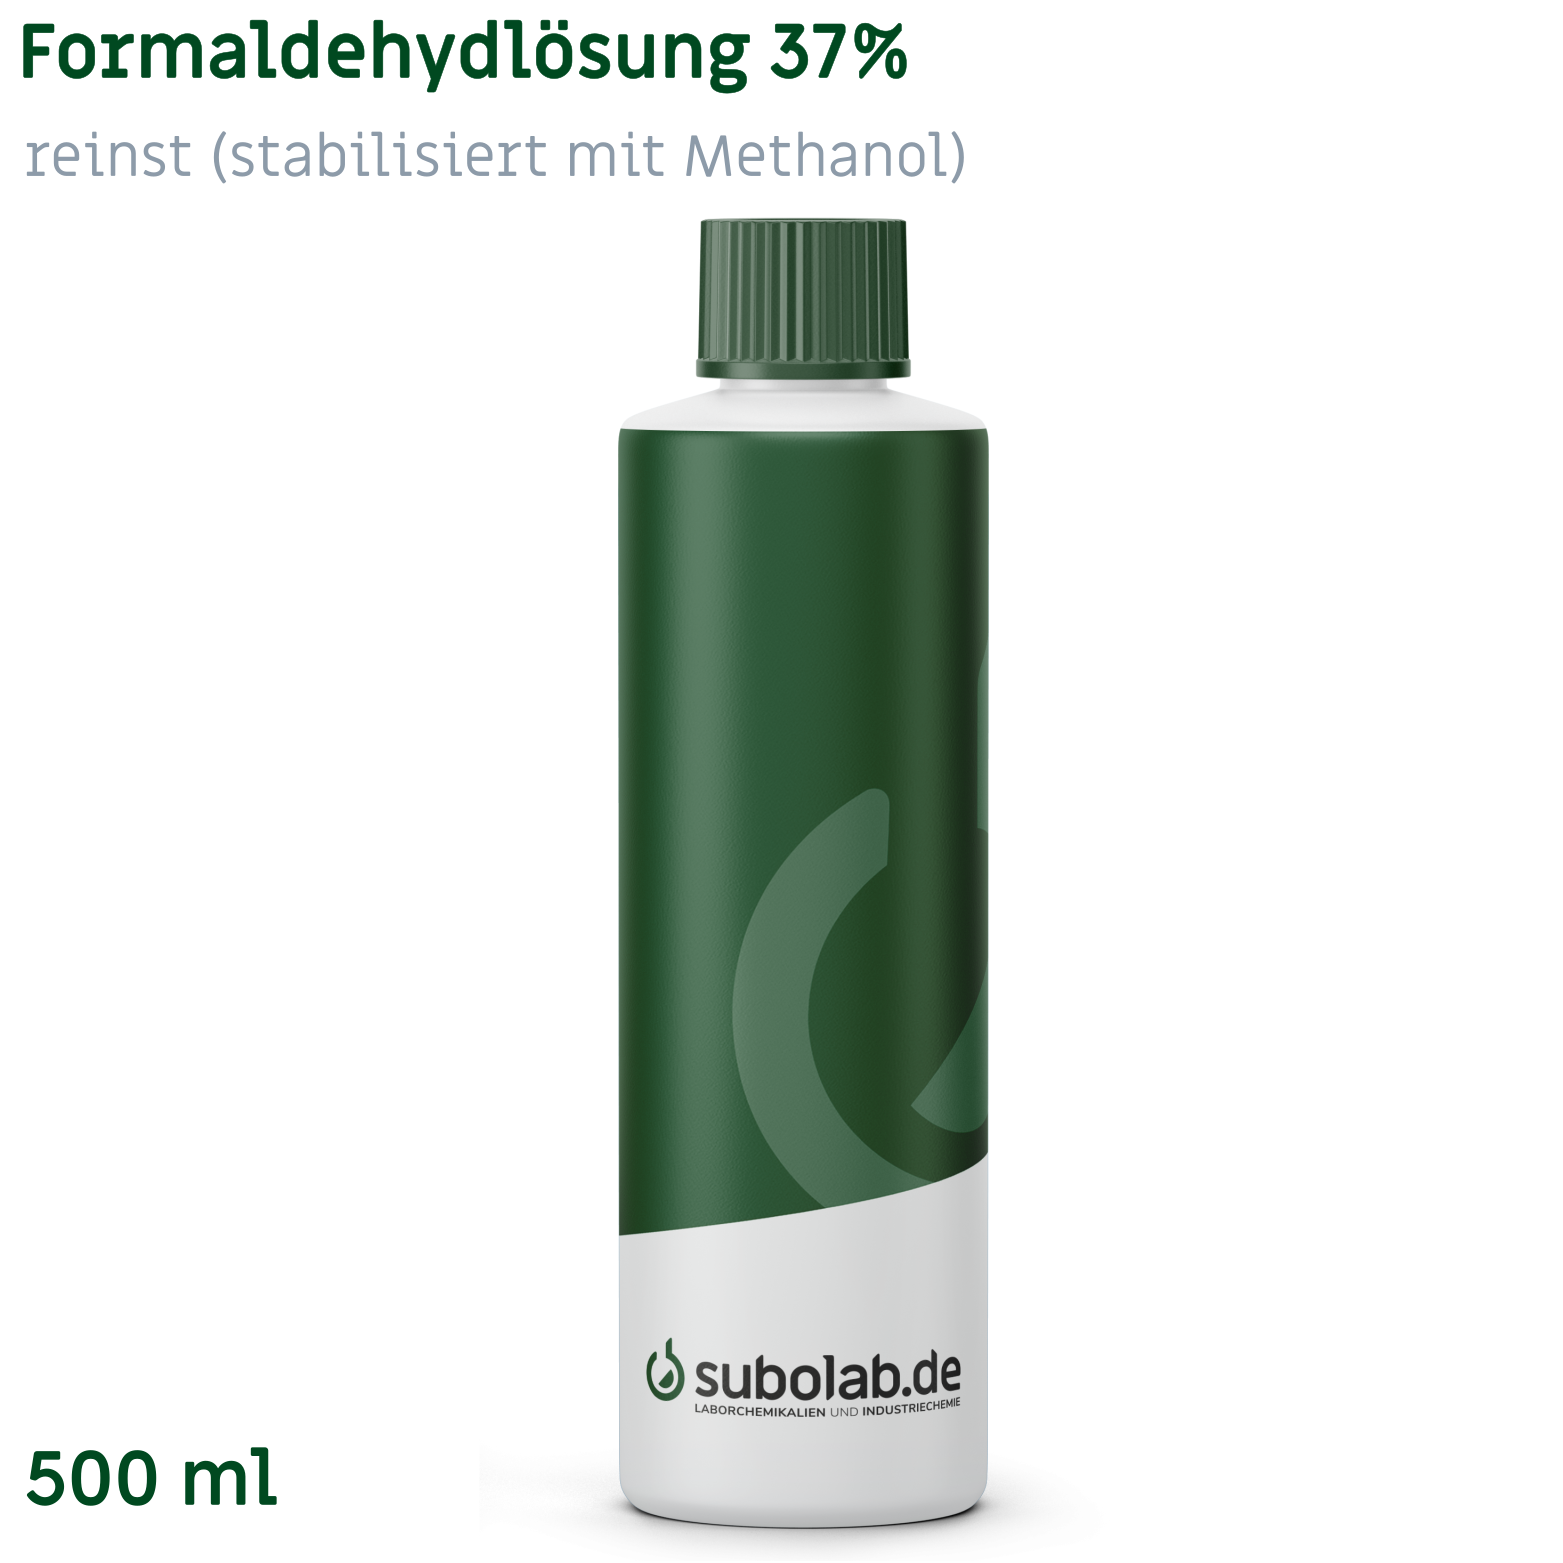 Bild von Formaldehydlösung 37% reinst (stabilisiert mit Methanol) (500 ml)